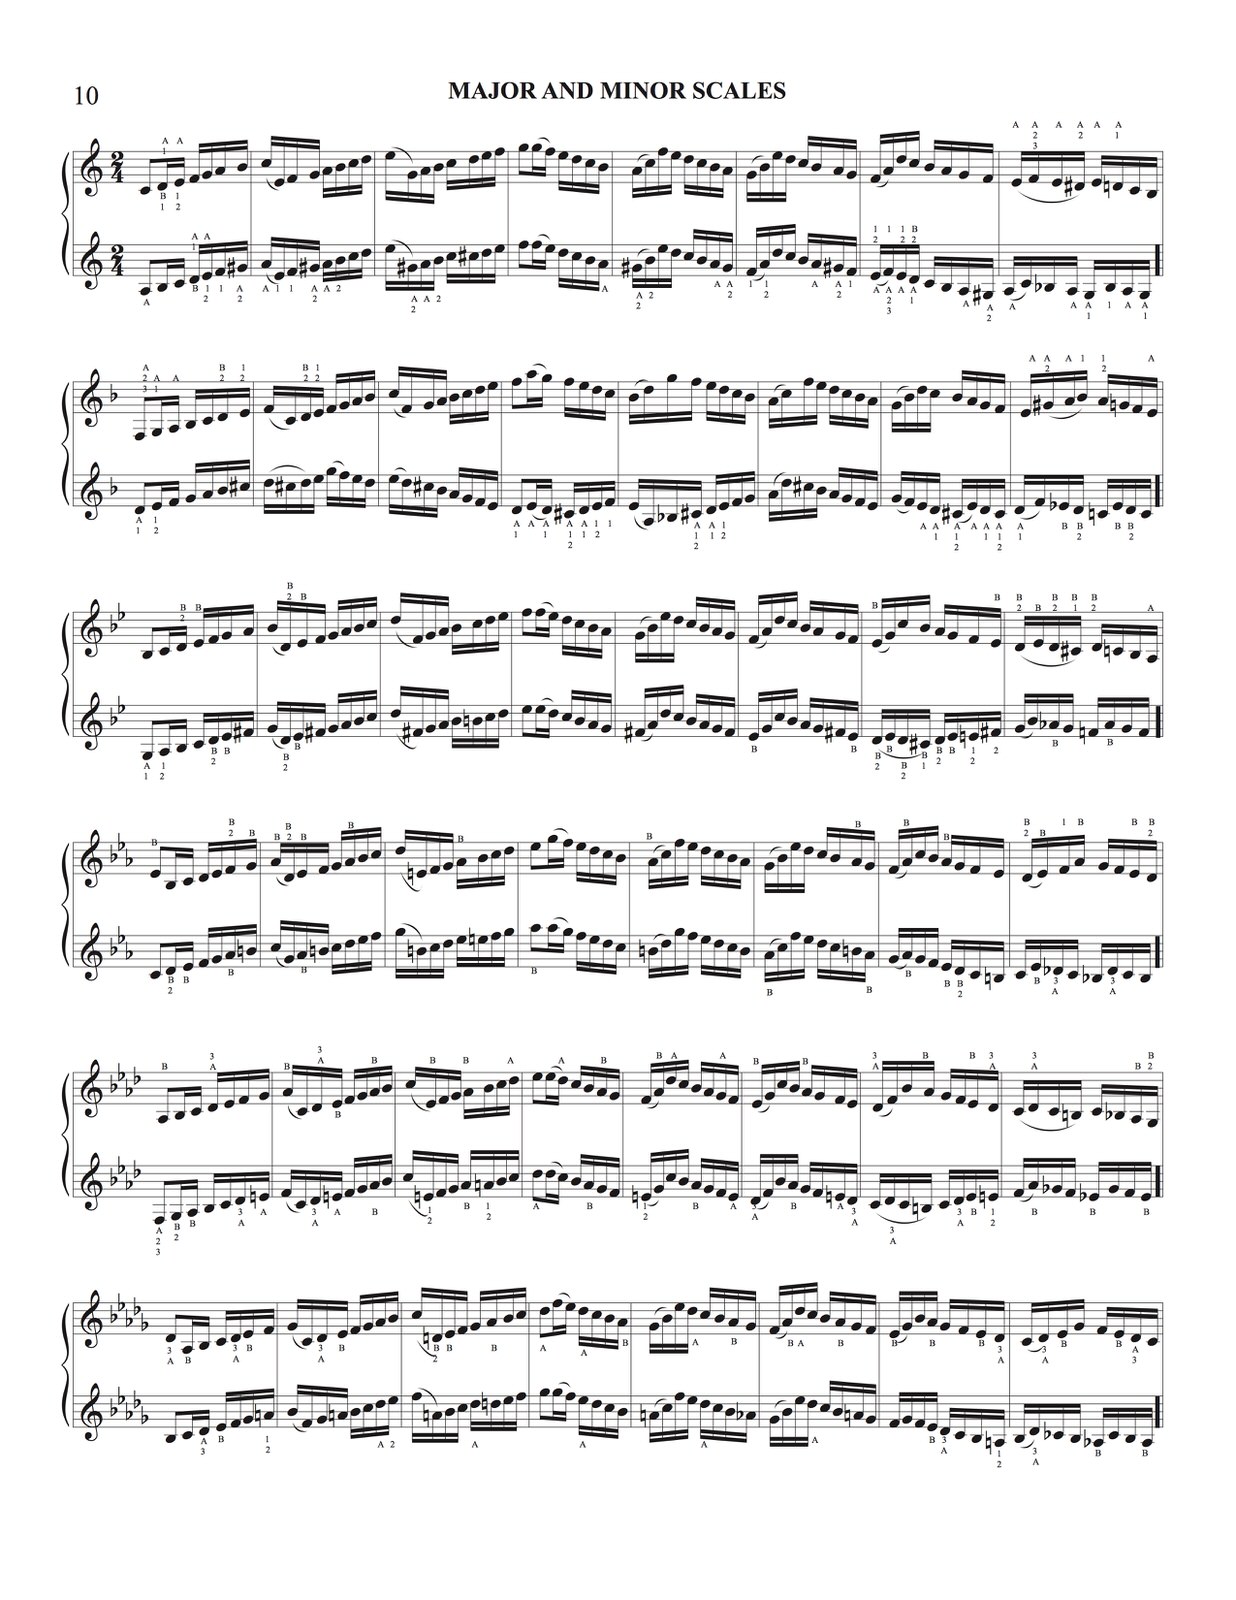 arban method trumpet pdf